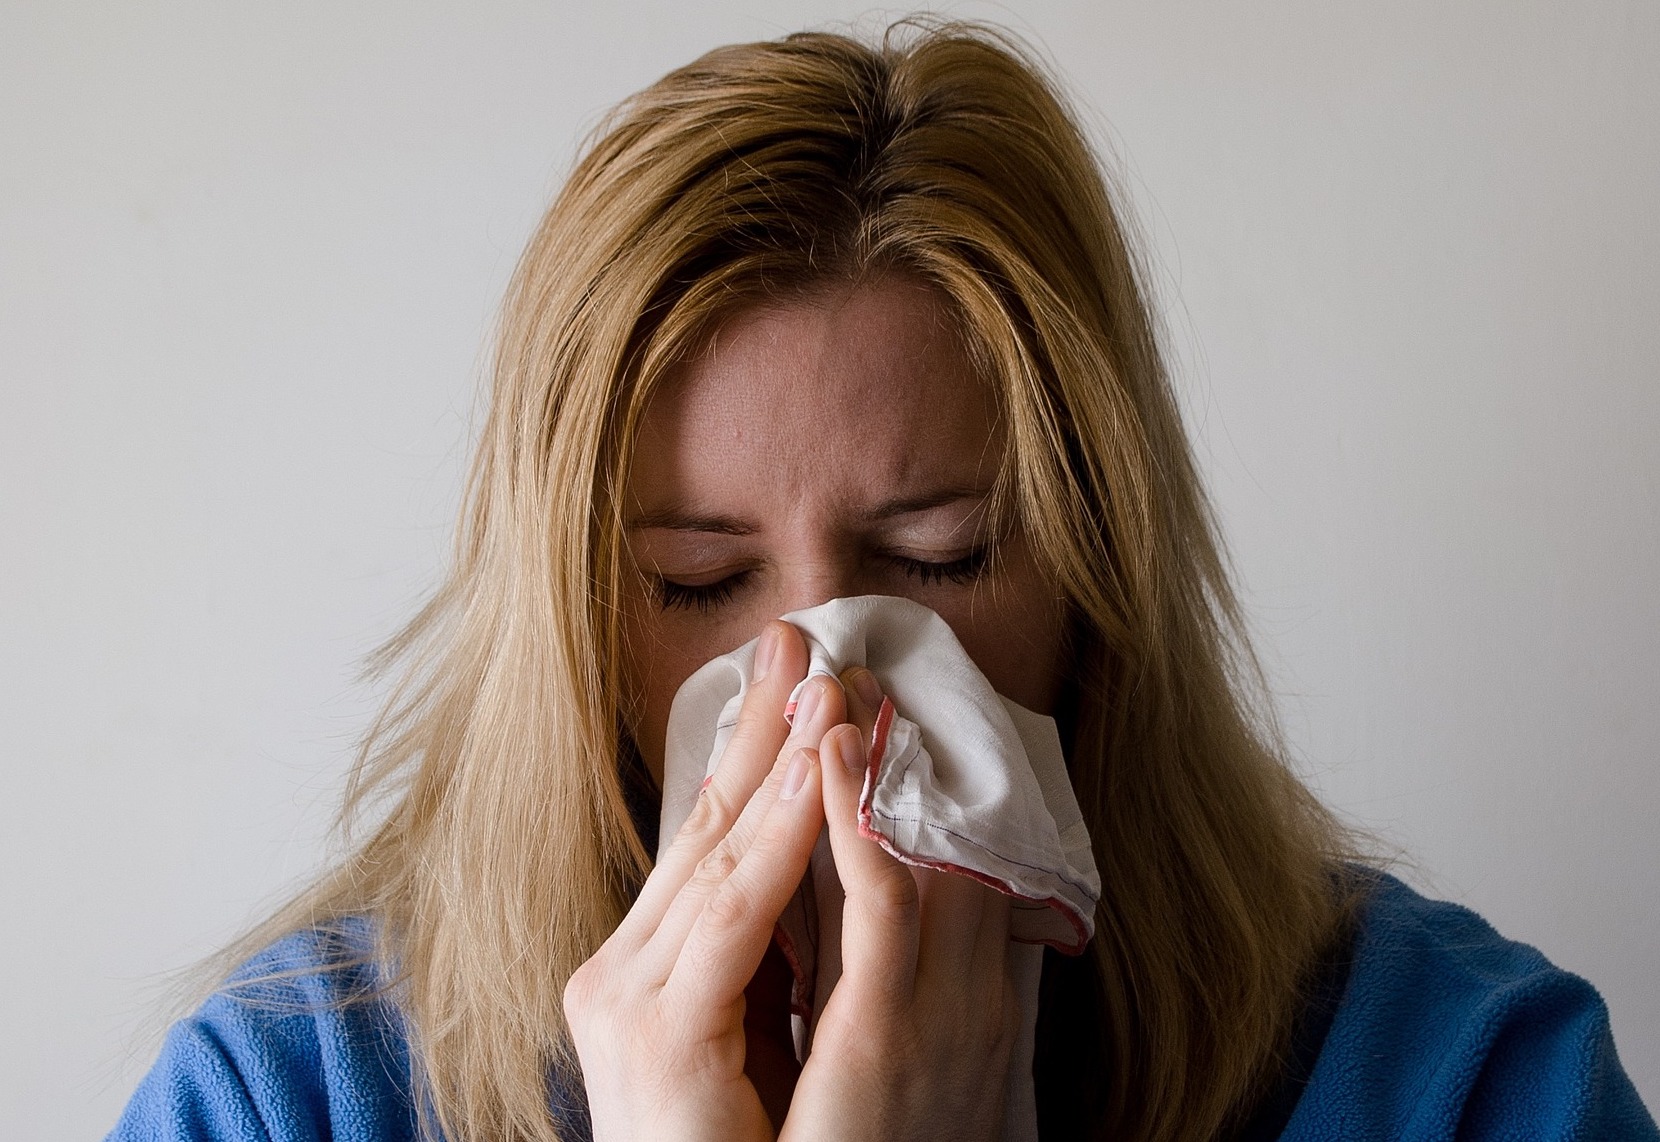 13 dicas caseiras para desentupir o nariz e melhorar a respiração